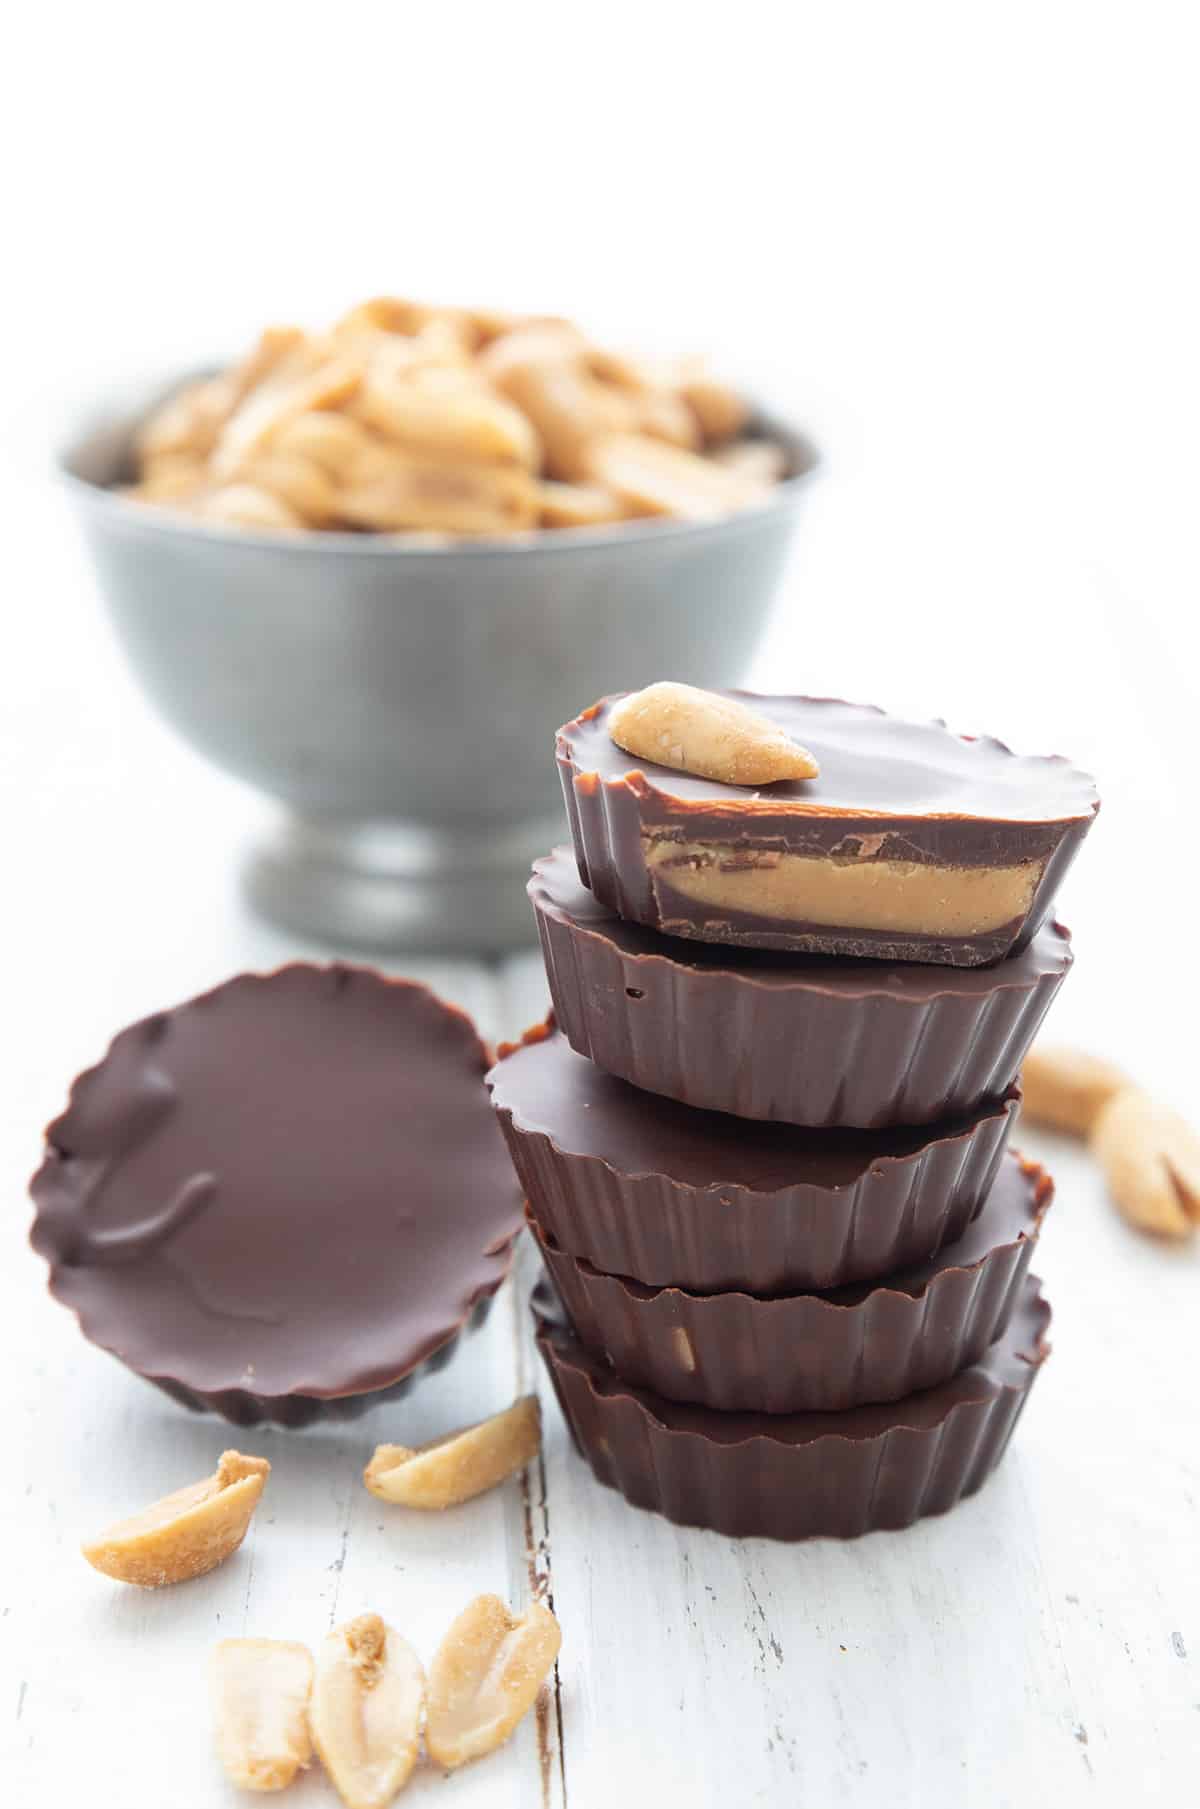 No Sugar Keto Cup Dark Chocolate Peanut Butter - 12 Cups - No